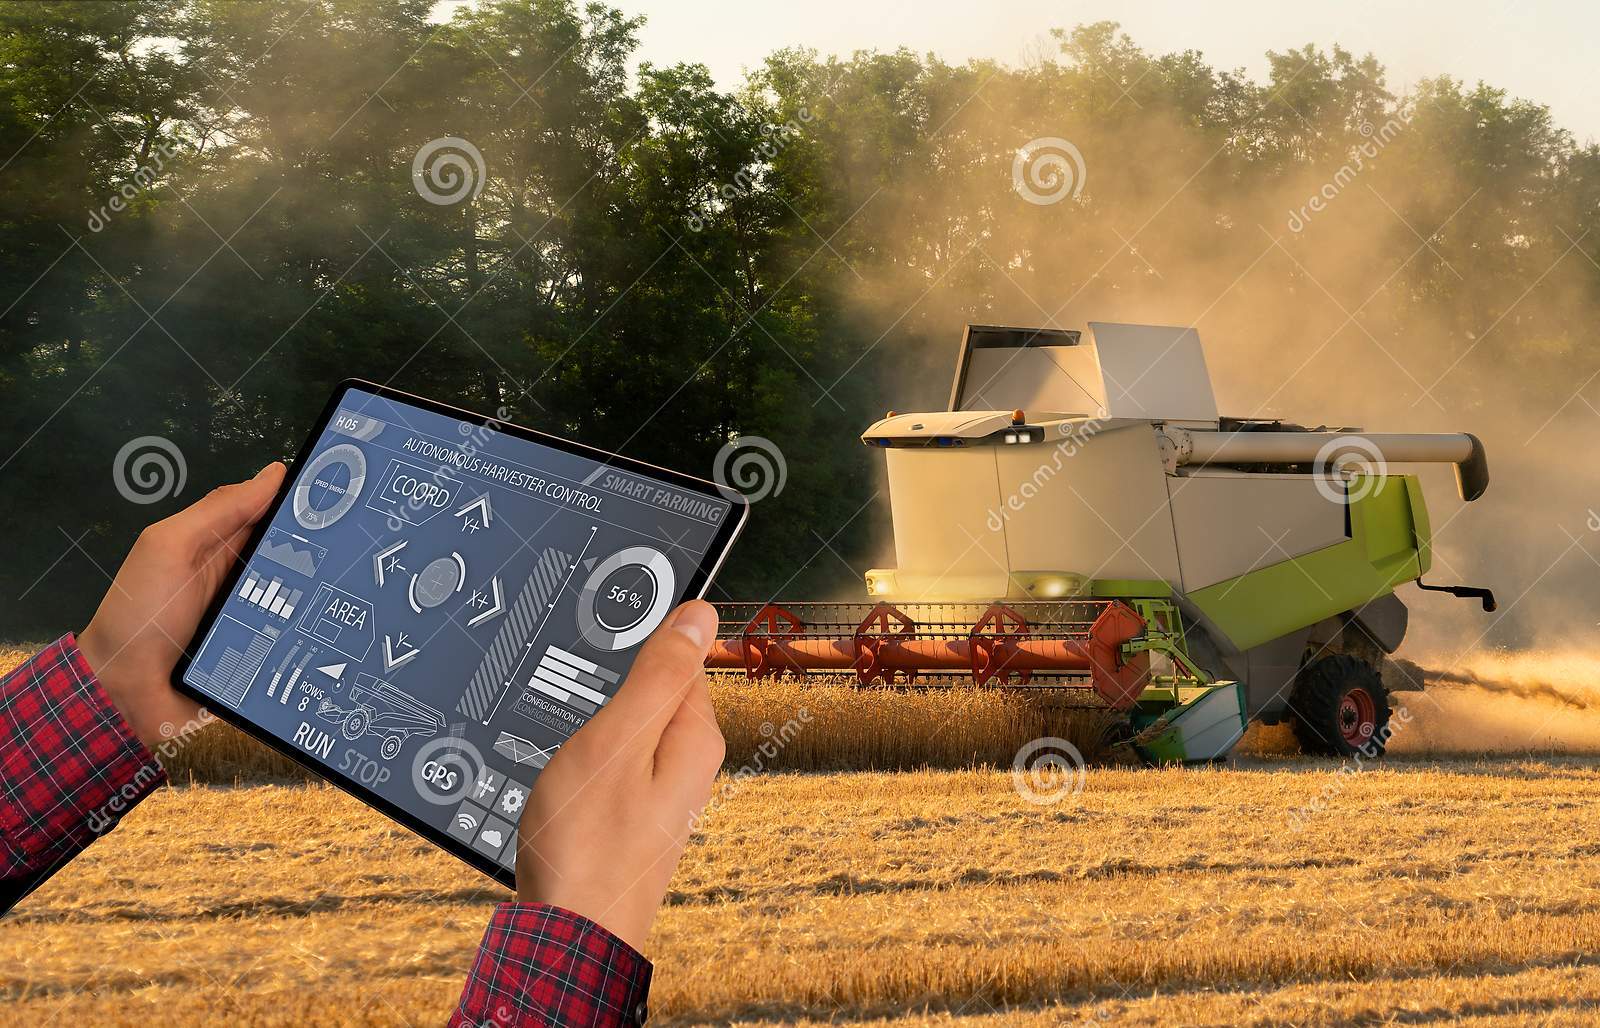 l-agriculteur-commande-la-moissonneuse-autonome-utilise-un-smartphone-futuriste-pour-commander-concept-agricole-futé-143869300.jpg